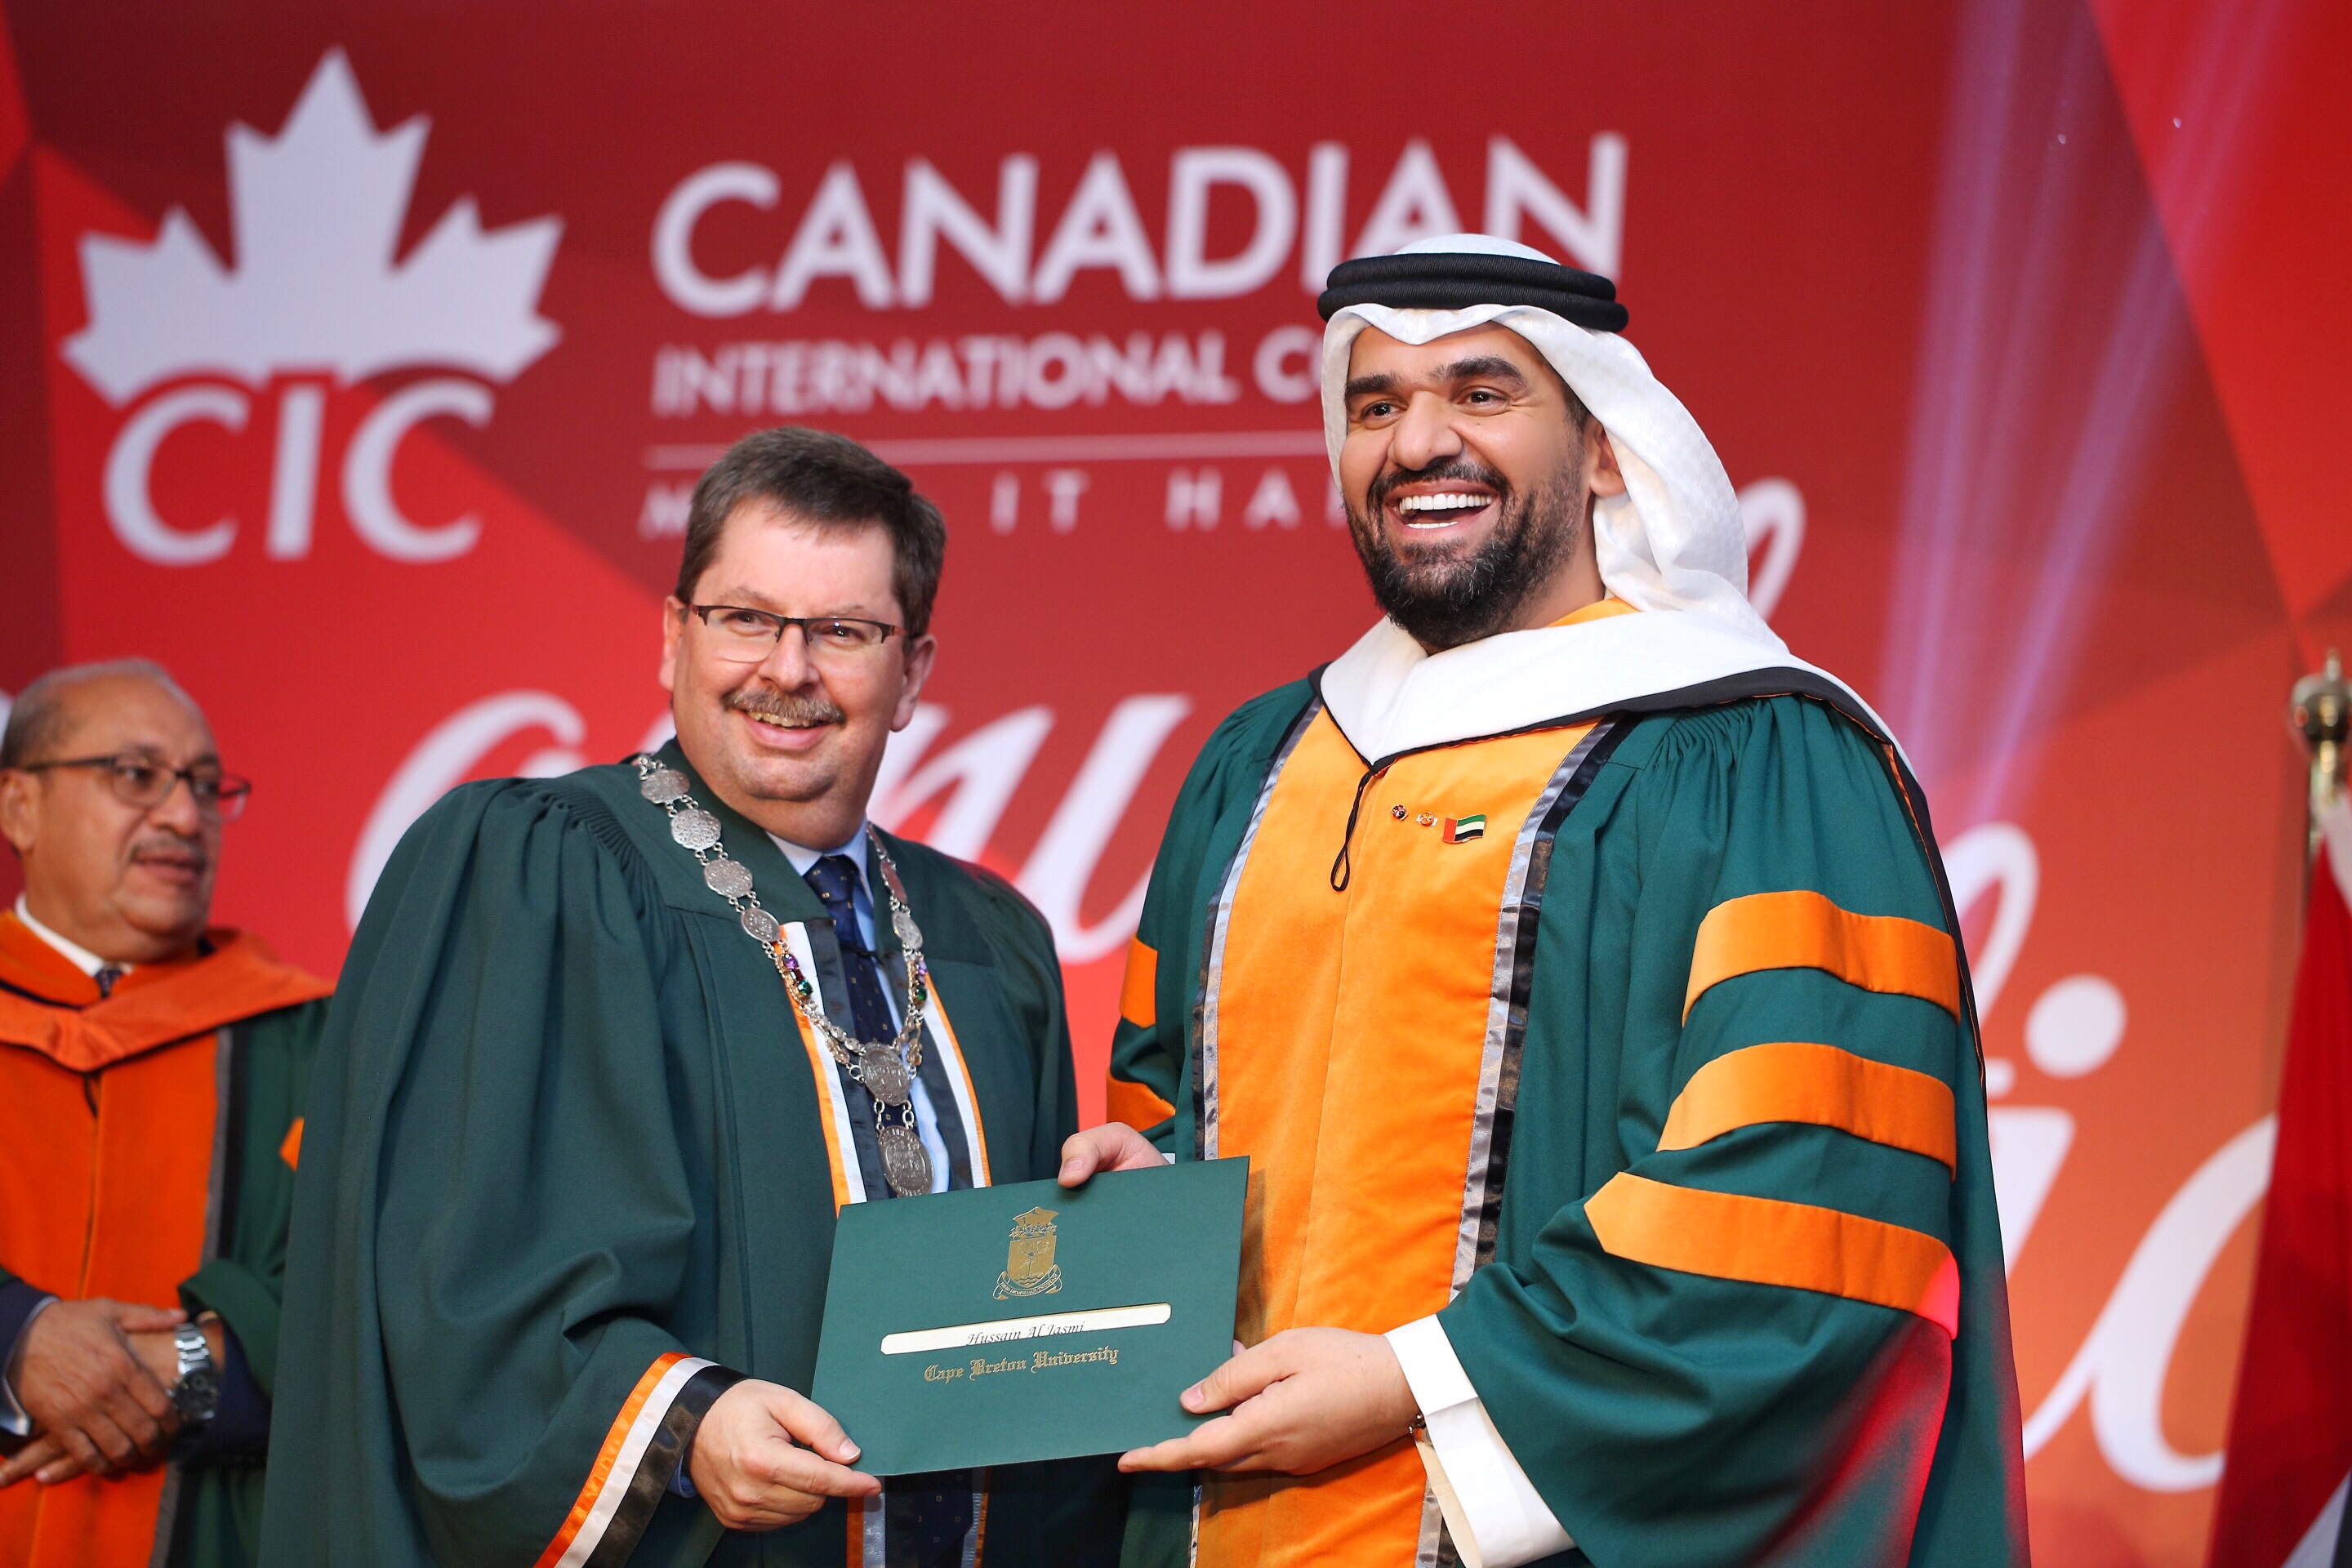 الكلية الكندية الدولية (سي اي سي) تمنح حسين الجسمي شهادة الدكتوراه الفخرية